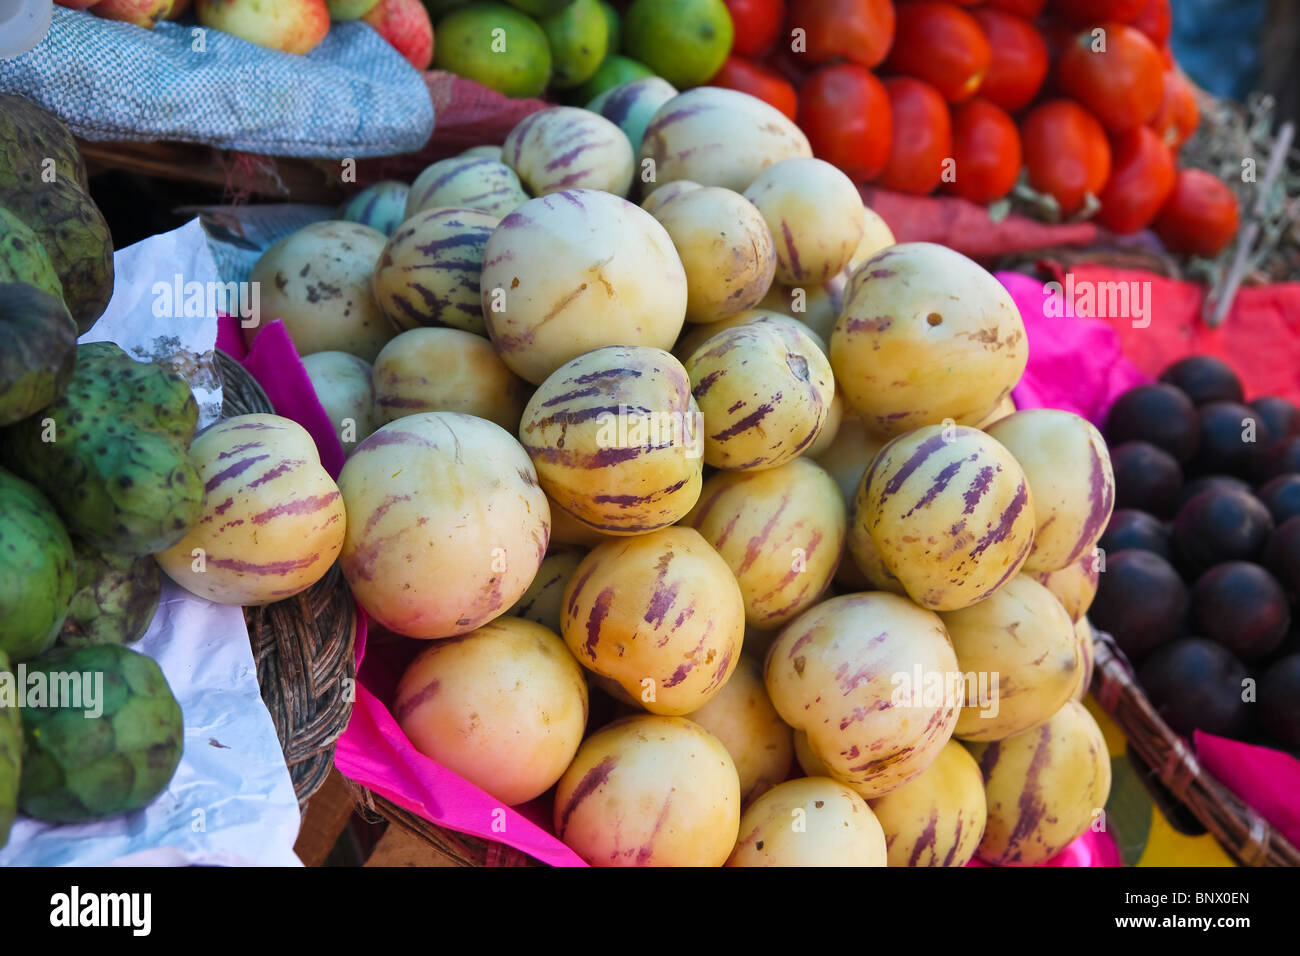 Some fruits in the Pisac market, near Cusco, Peru. Stock Photo